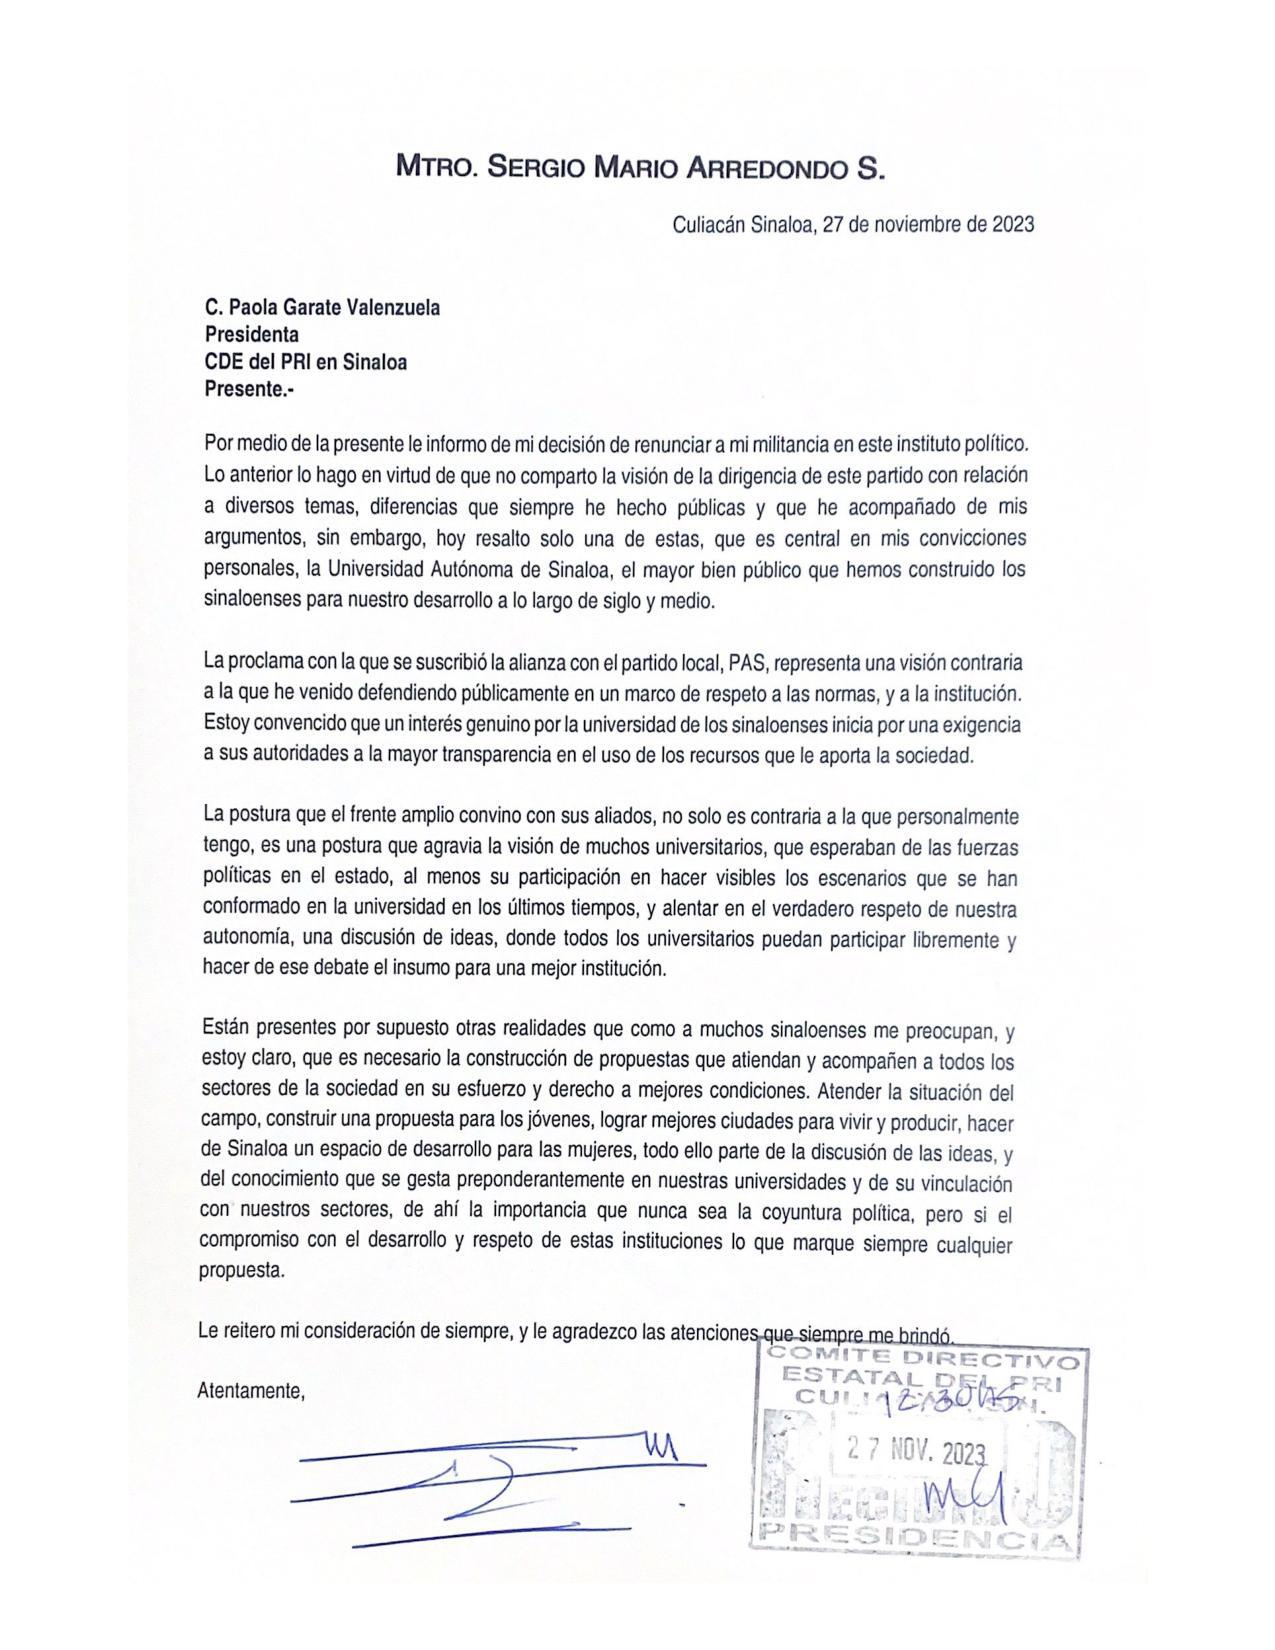 $!Sergio Mario Arredondo renuncia al PRI debido a alianza con el PAS